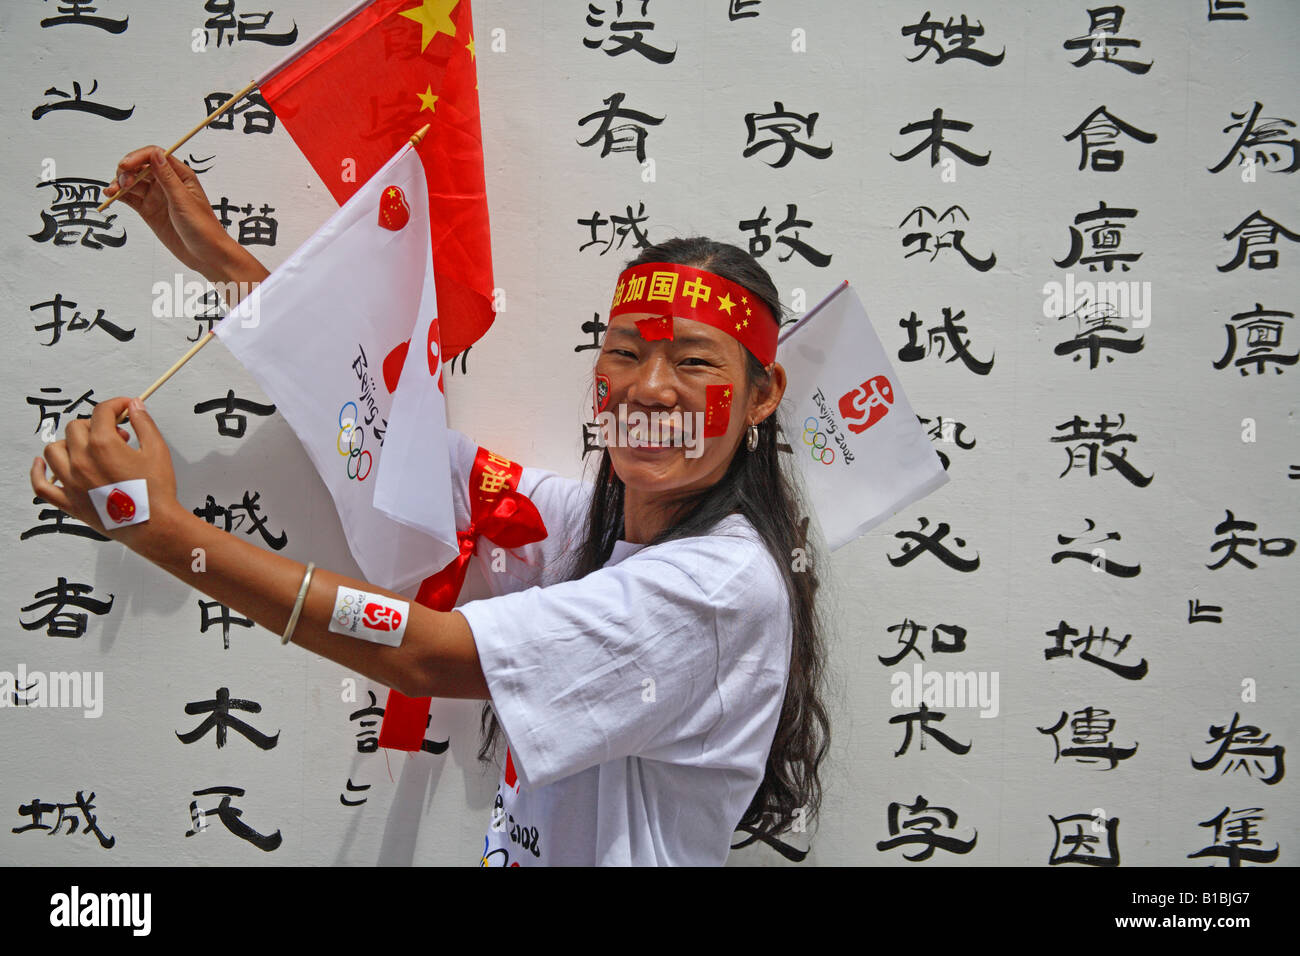 Olympia femenino chino fan Foto de stock